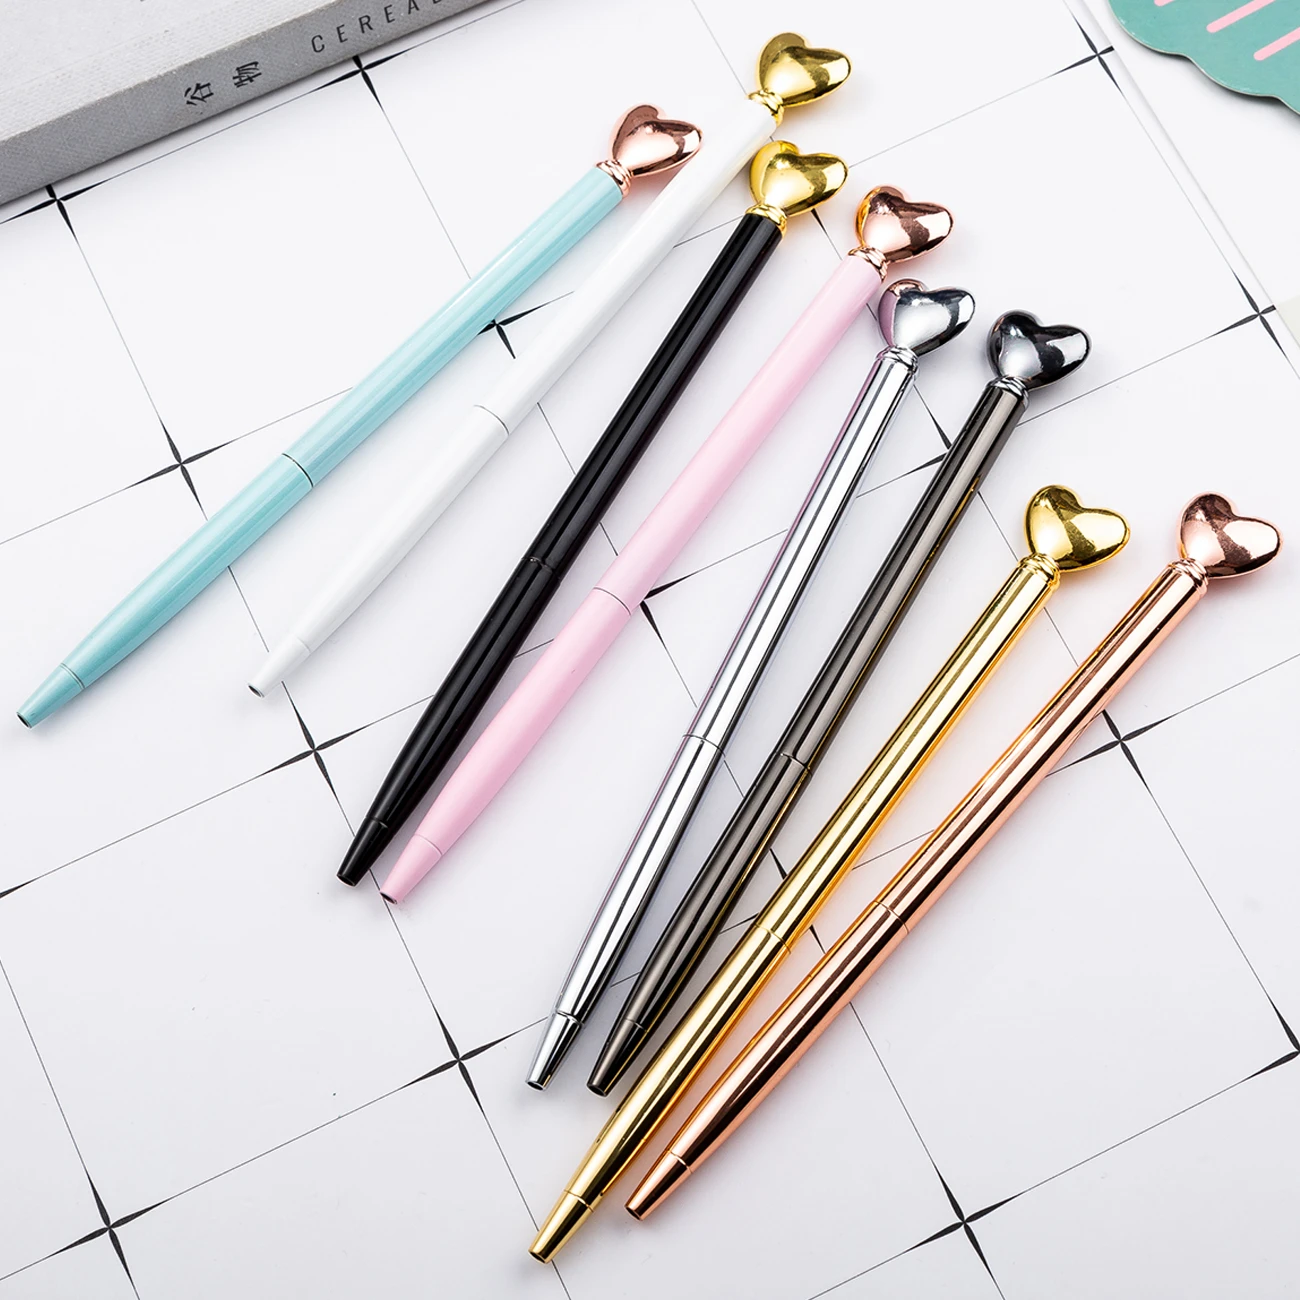 Newest Design Beauty Promotional Items Pens on Top Love Heart Shape Wedding Gift Pen Twist Metal Pen